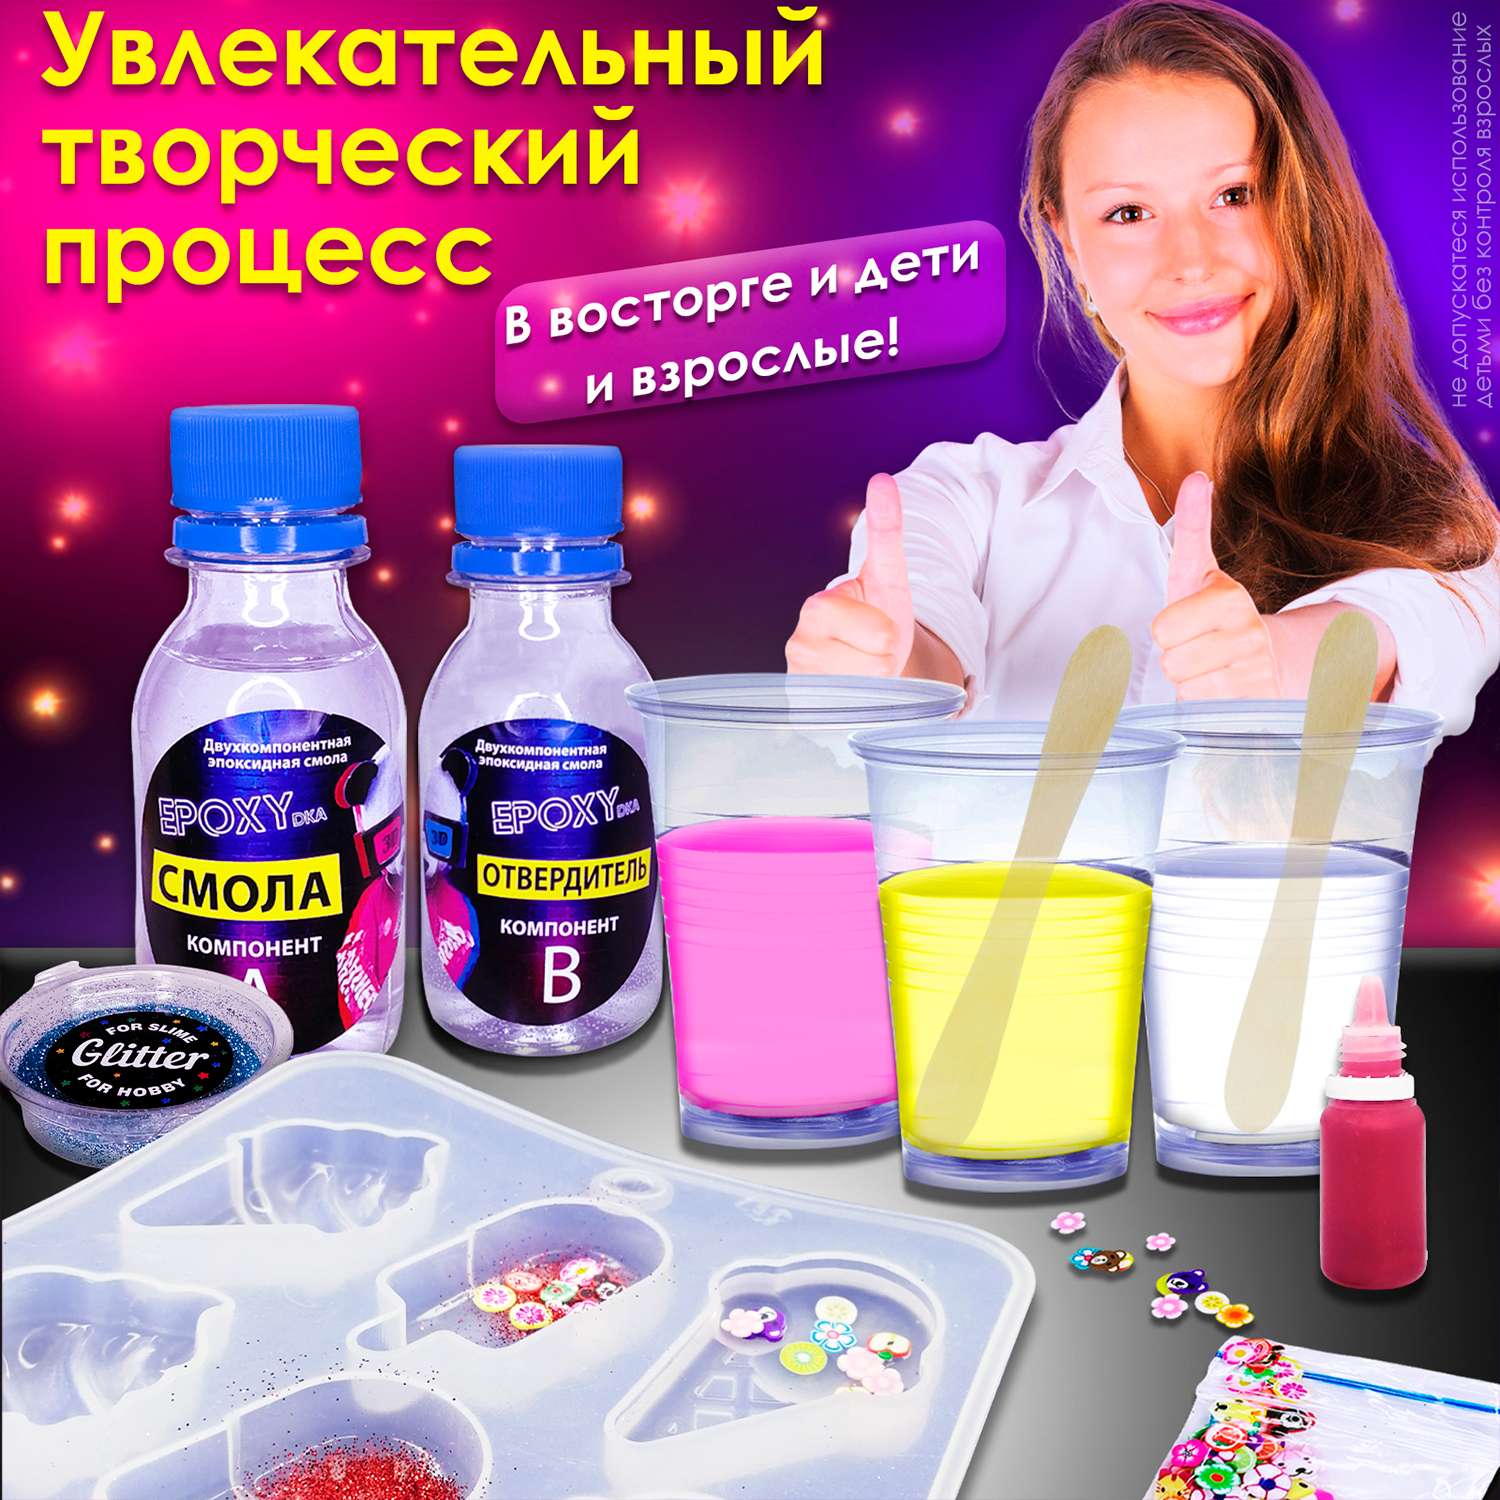 Набор для творчества MINI-TOYS Эпоксидная смола/EPOXYdka Normal BOX 2D/Молд силиконовый/Мороженое - фото 4